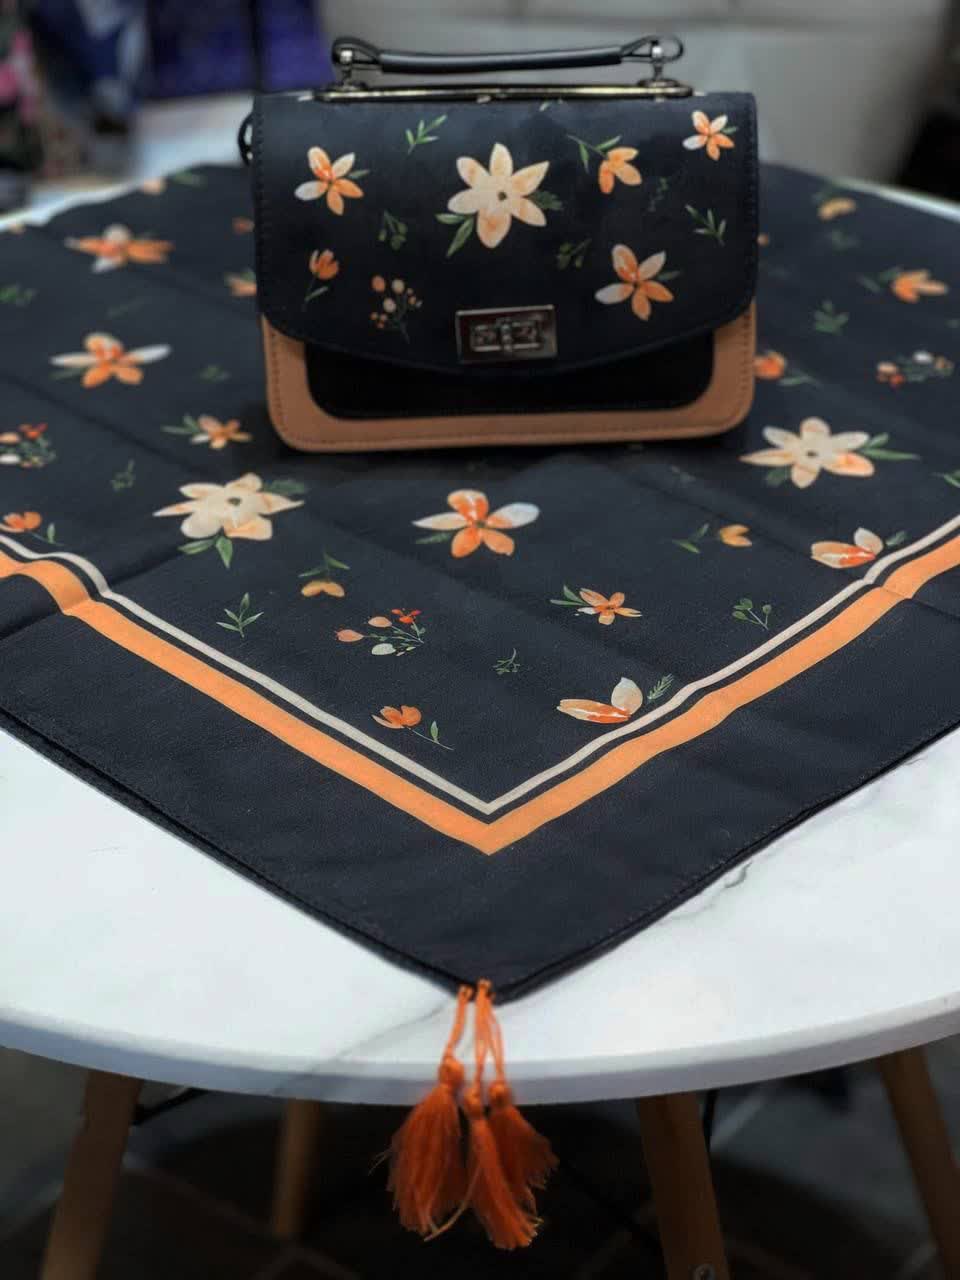 ست کیف و روسری زنانه طرح فلاور رنگ مشکی با گل های نارنجی با کیف دسته چرمی کیفیت عالی با ارسال رایگان کد mo415